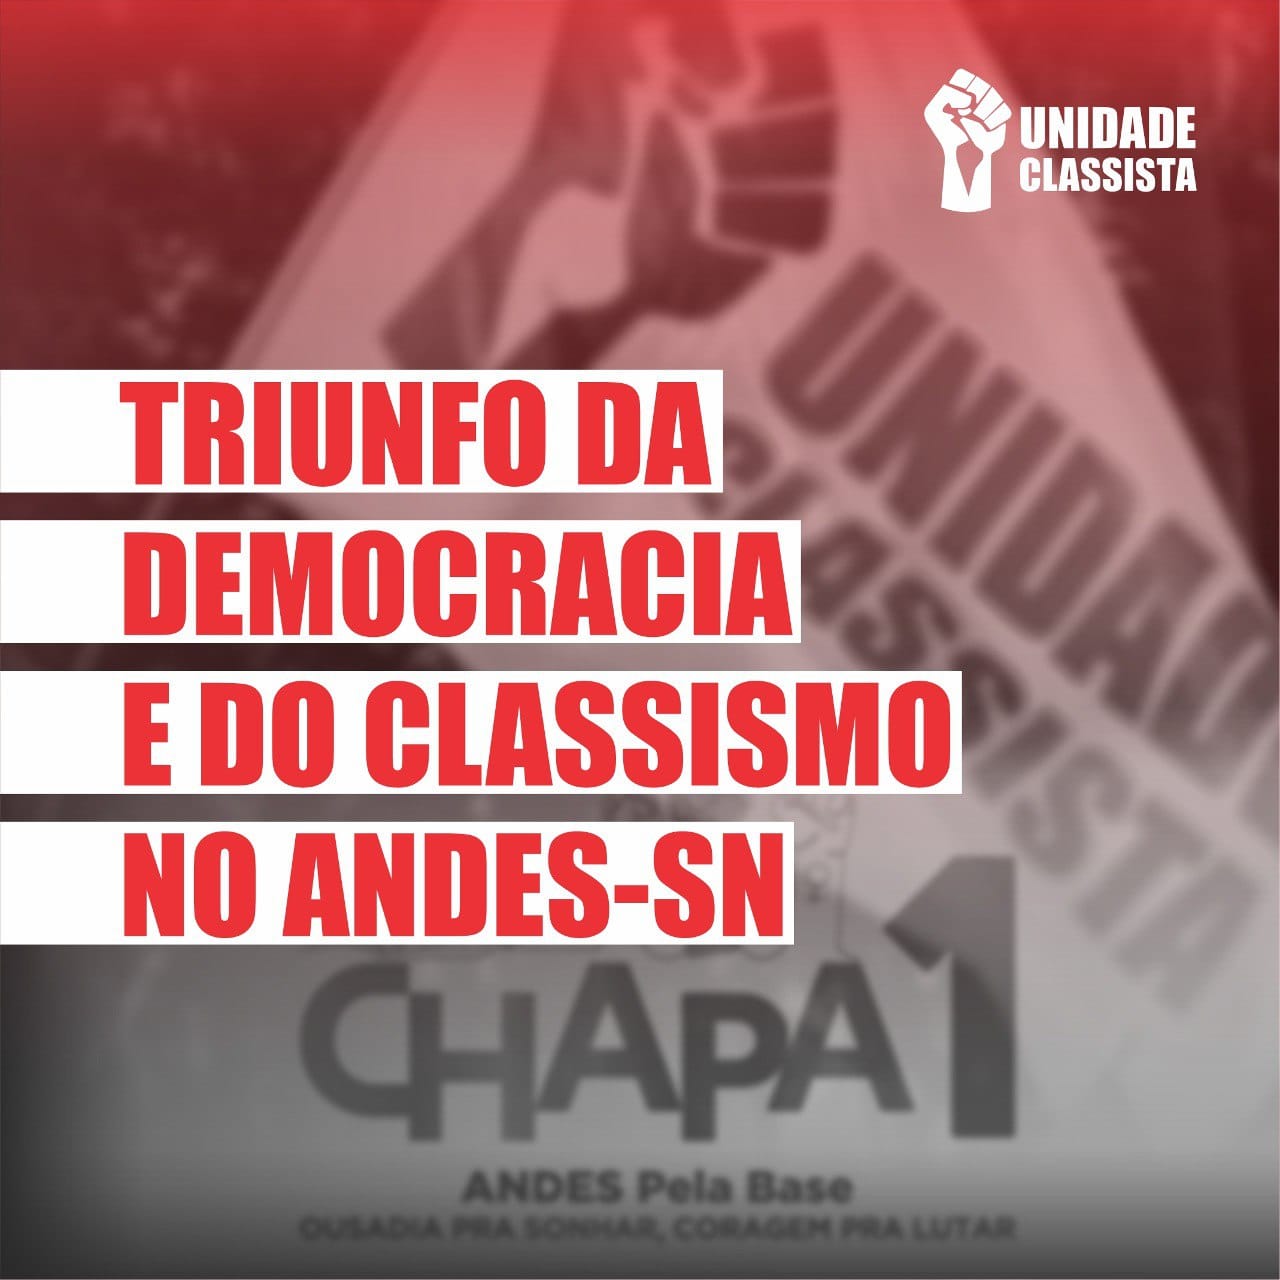 TRIUNFO DA DEMOCRACIA E DO CLASSISMO NO ANDES-SN